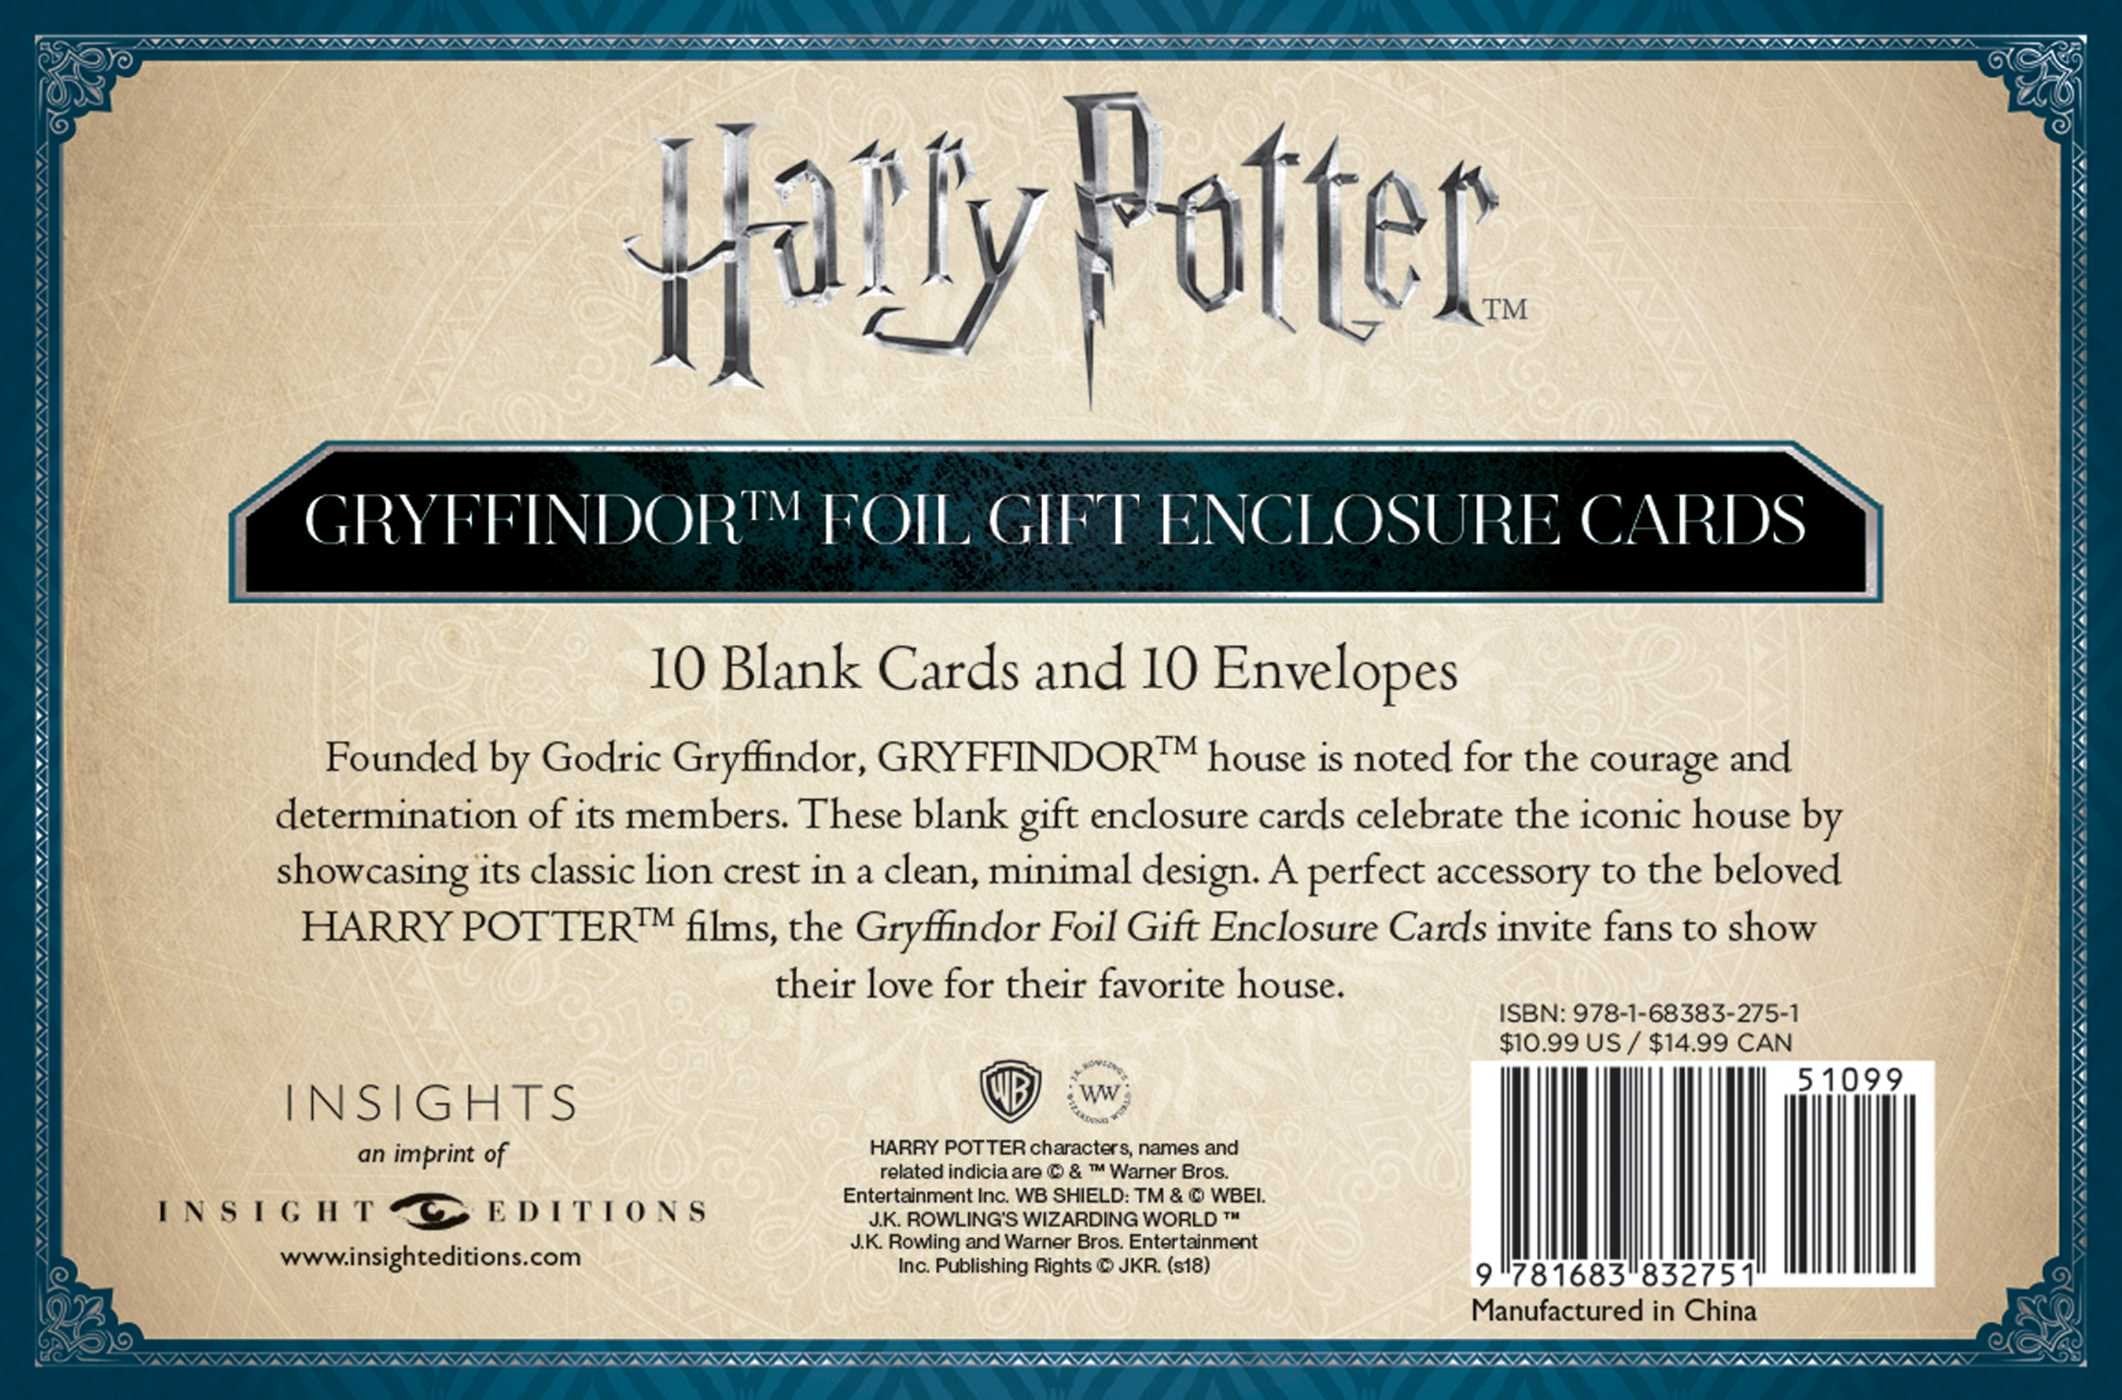 Harry Potter: Gryffindor Crest Embossed Foil Gift Enclosure Cards